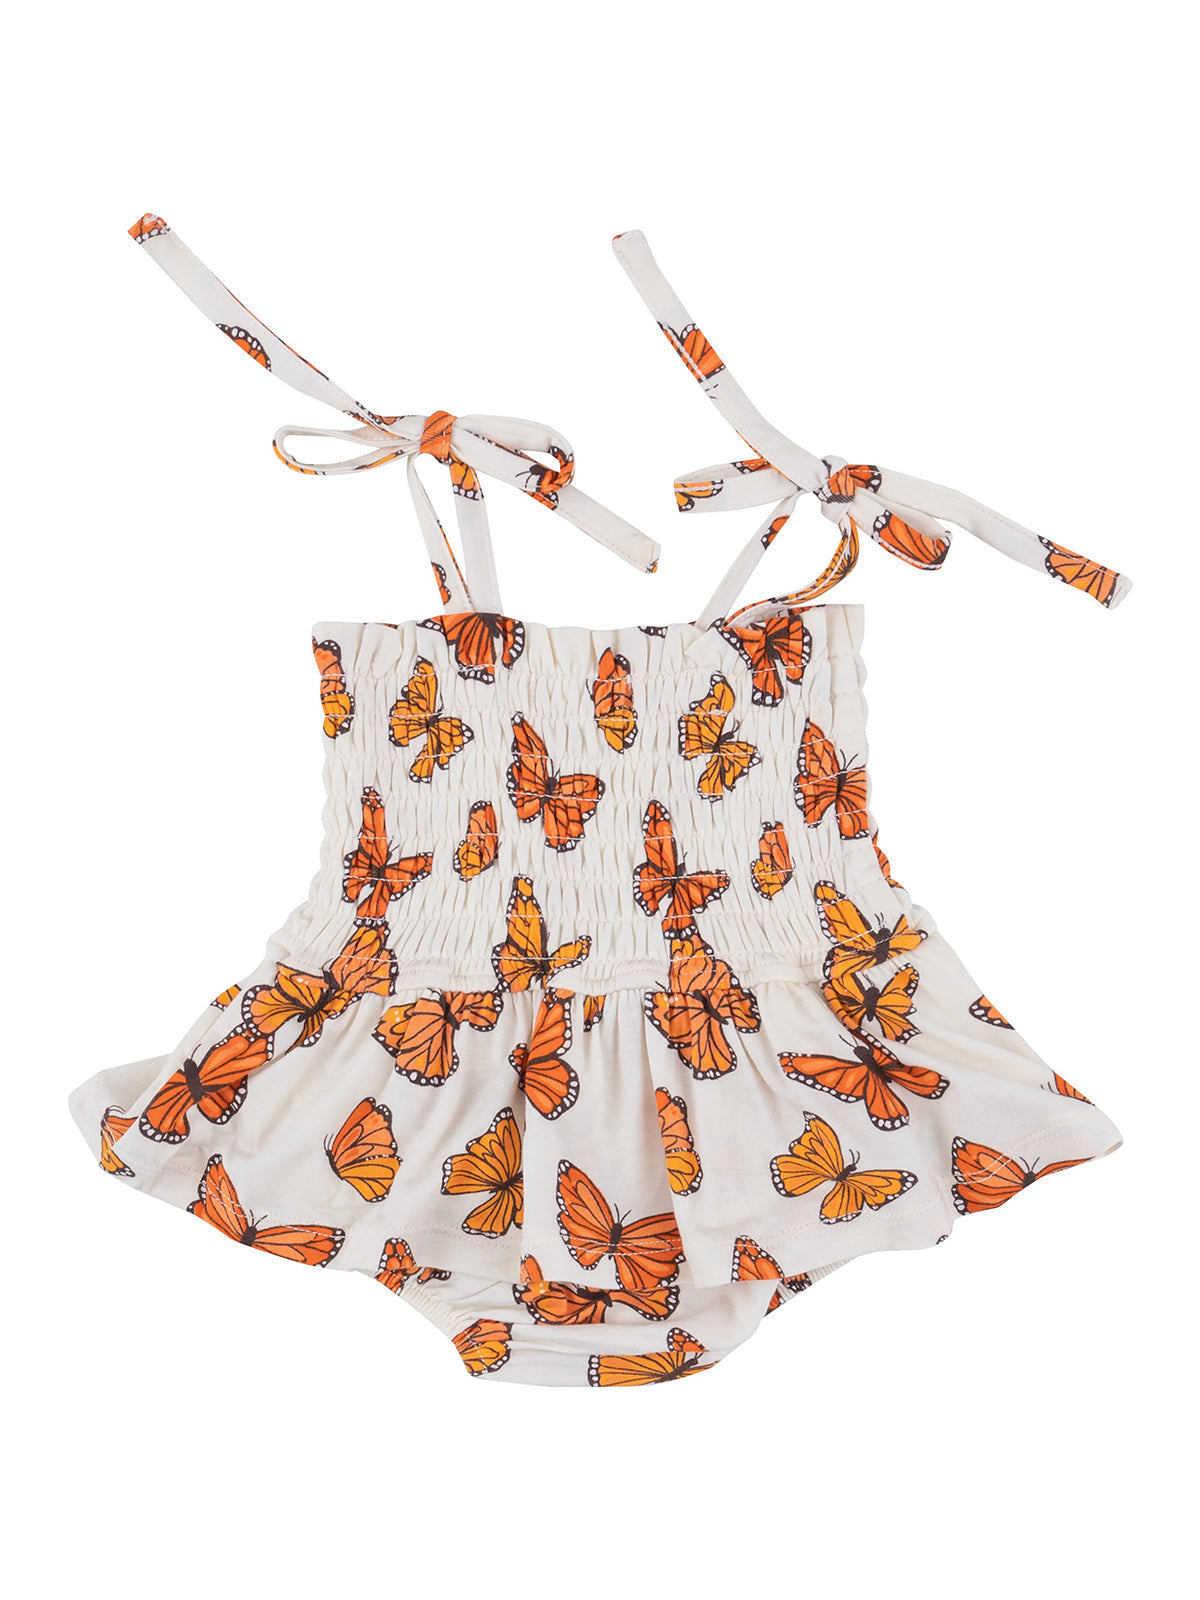 Smocked Bubble w/ Skirt, Mariposa Monarca Butterfly